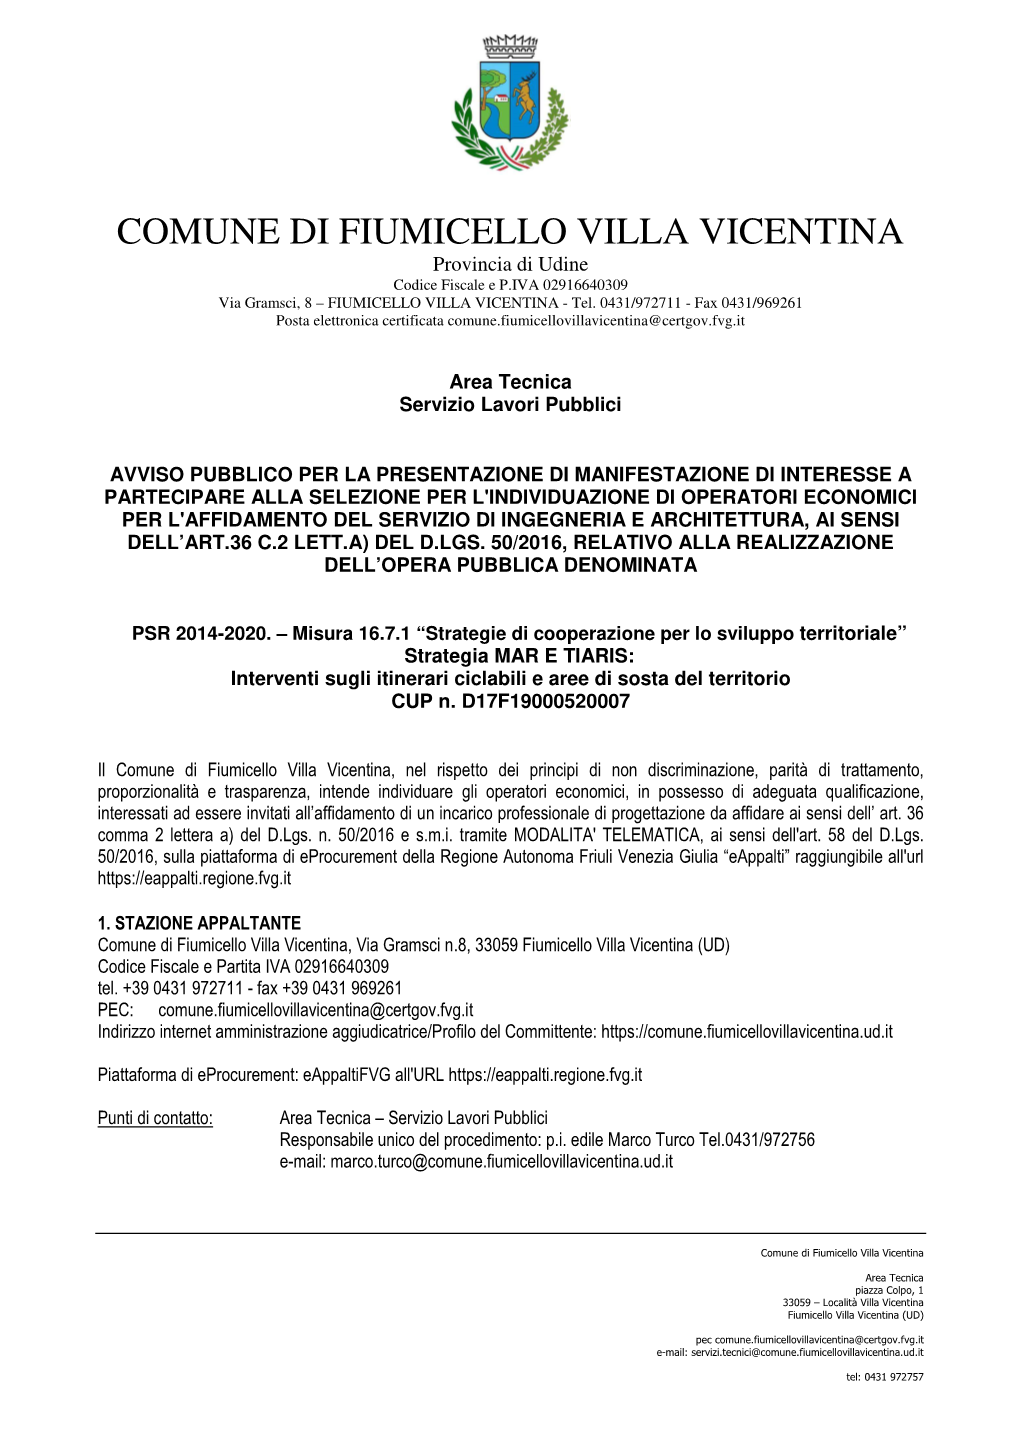 COMUNE DI FIUMICELLO VILLA VICENTINA Provincia Di Udine Codice Fiscale E P.IVA 02916640309 Via Gramsci, 8 – FIUMICELLO VILLA VICENTINA - Tel